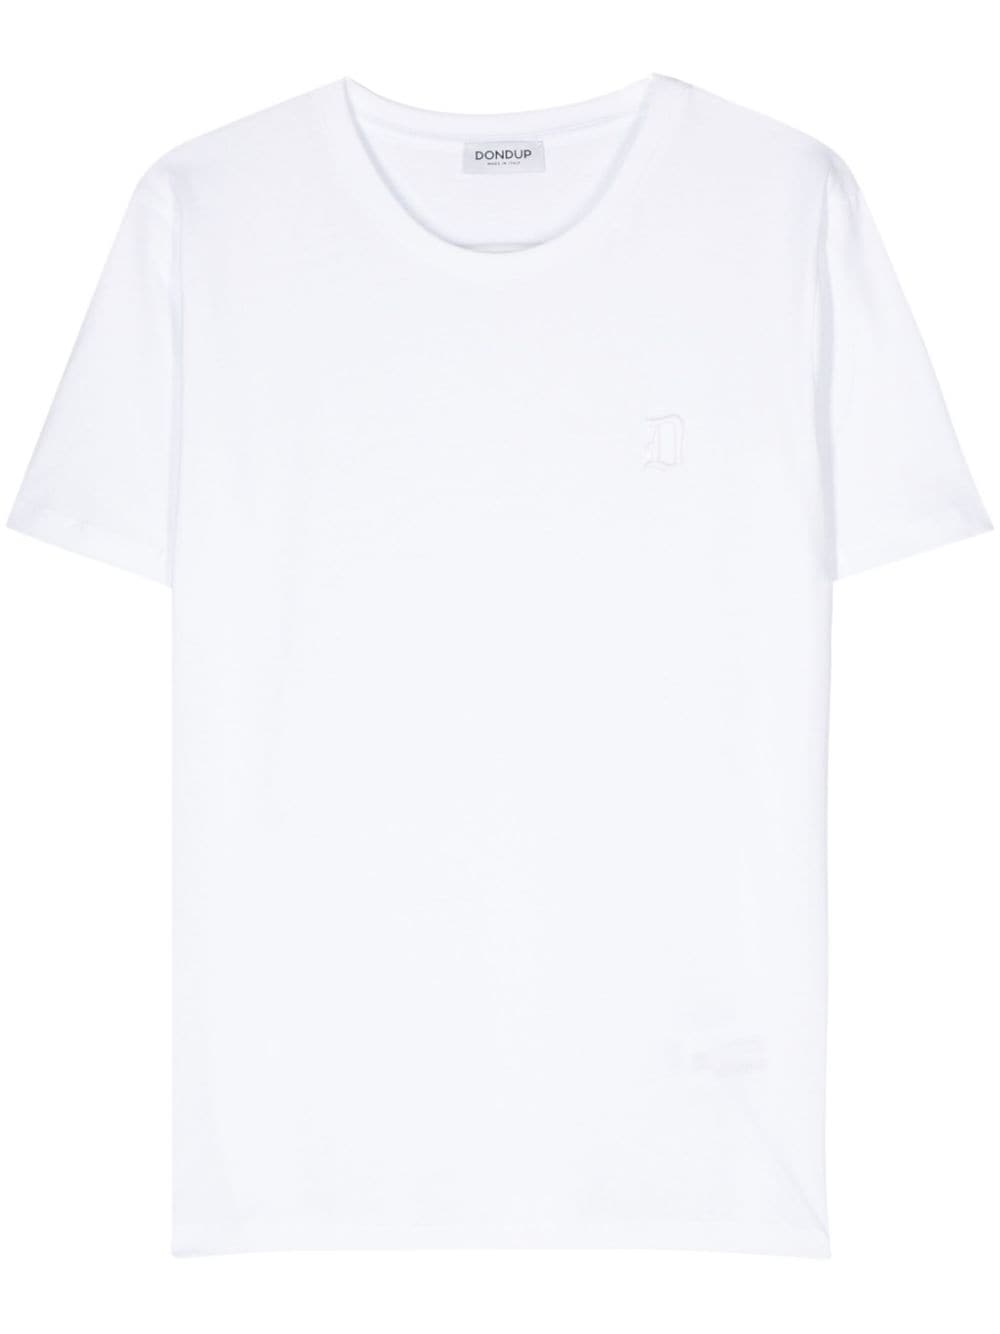 Dondup DONDUP- White Logo T-shirt